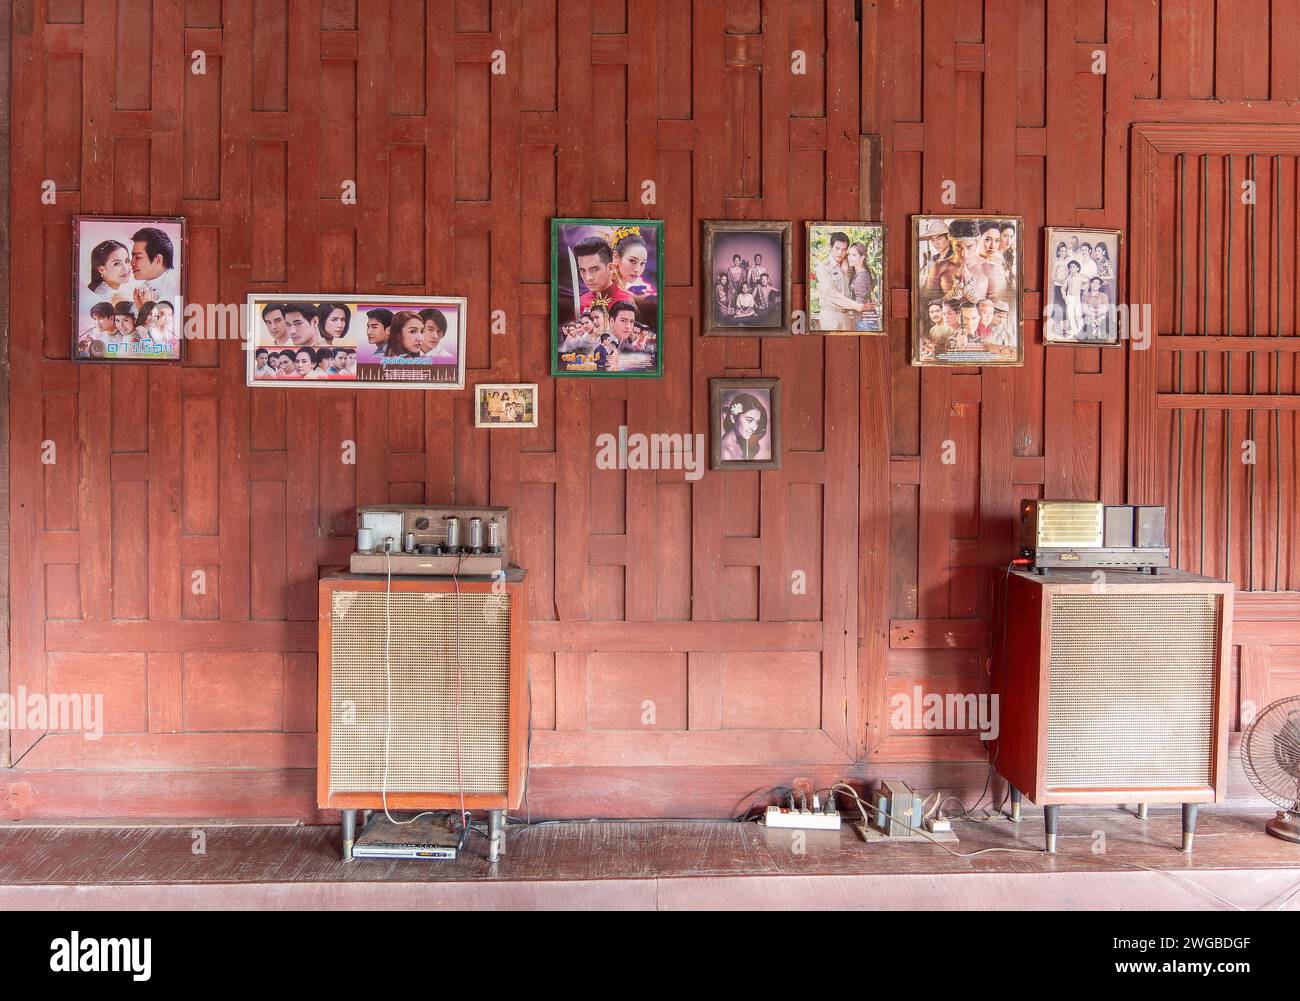 Interni di tradizionali case thailandesi in legno con impianto stereo hi-fi vintage e foto di celebrità thailandesi sulle pareti. Foto Stock